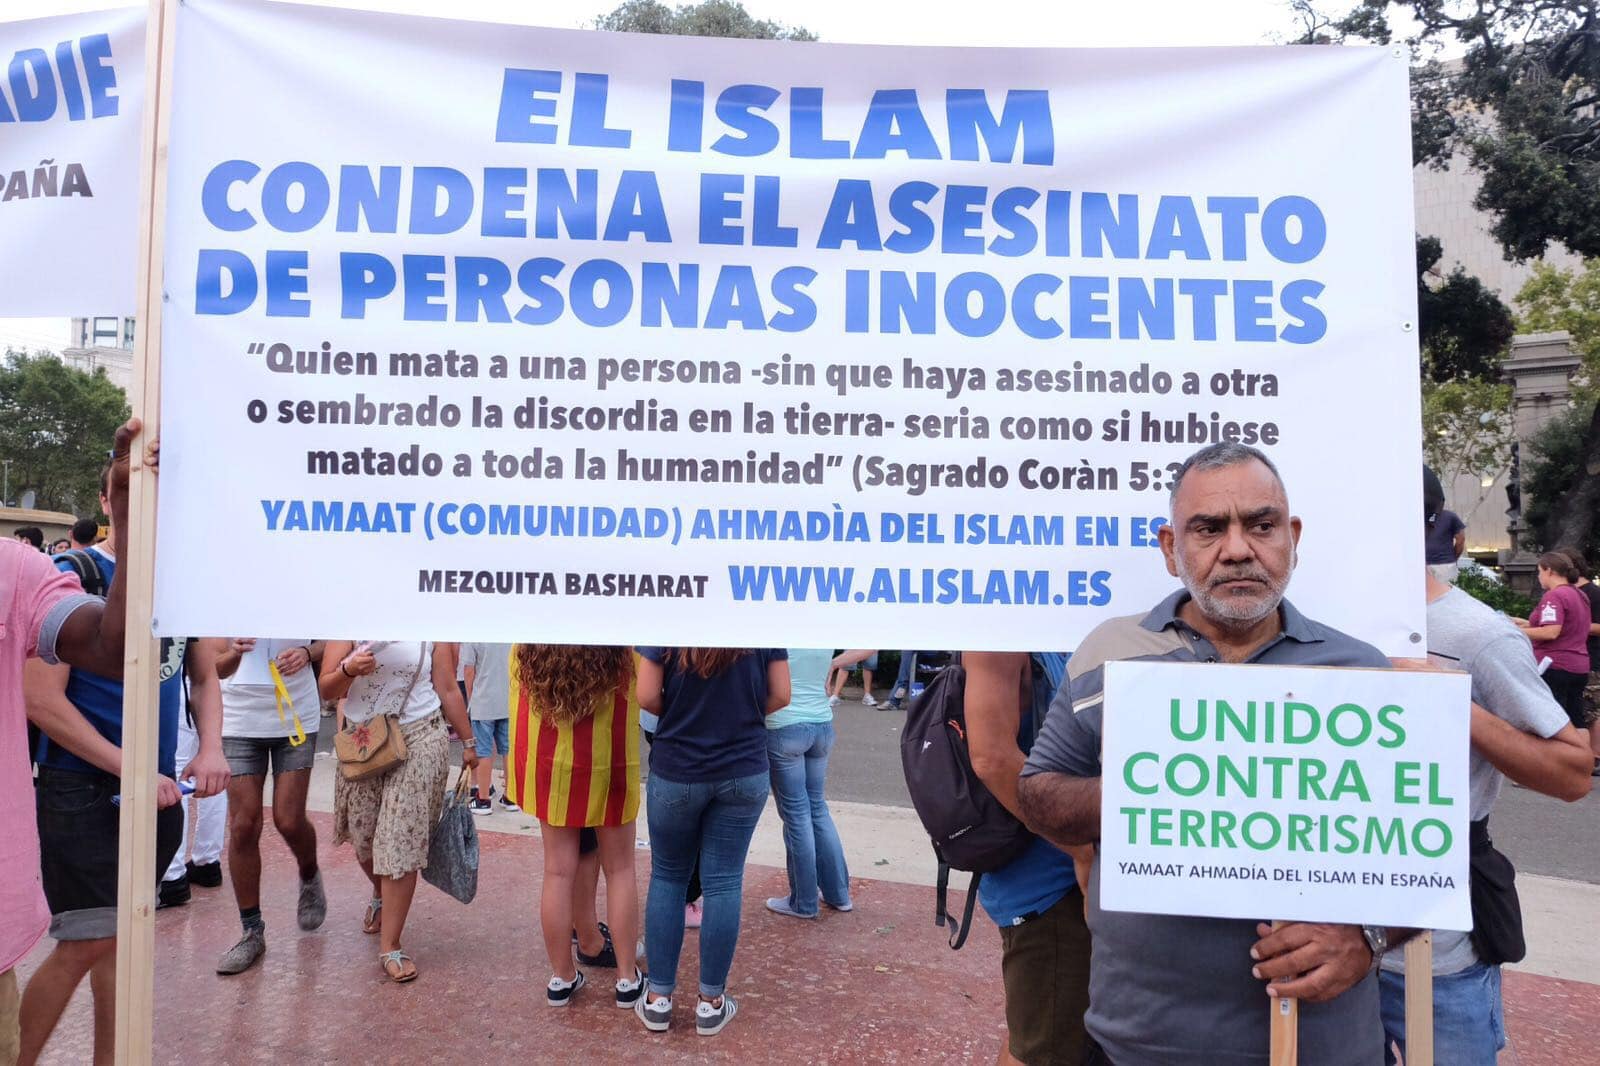 La manifestación de Barcelona contra el terrorismo, en imágenes 16